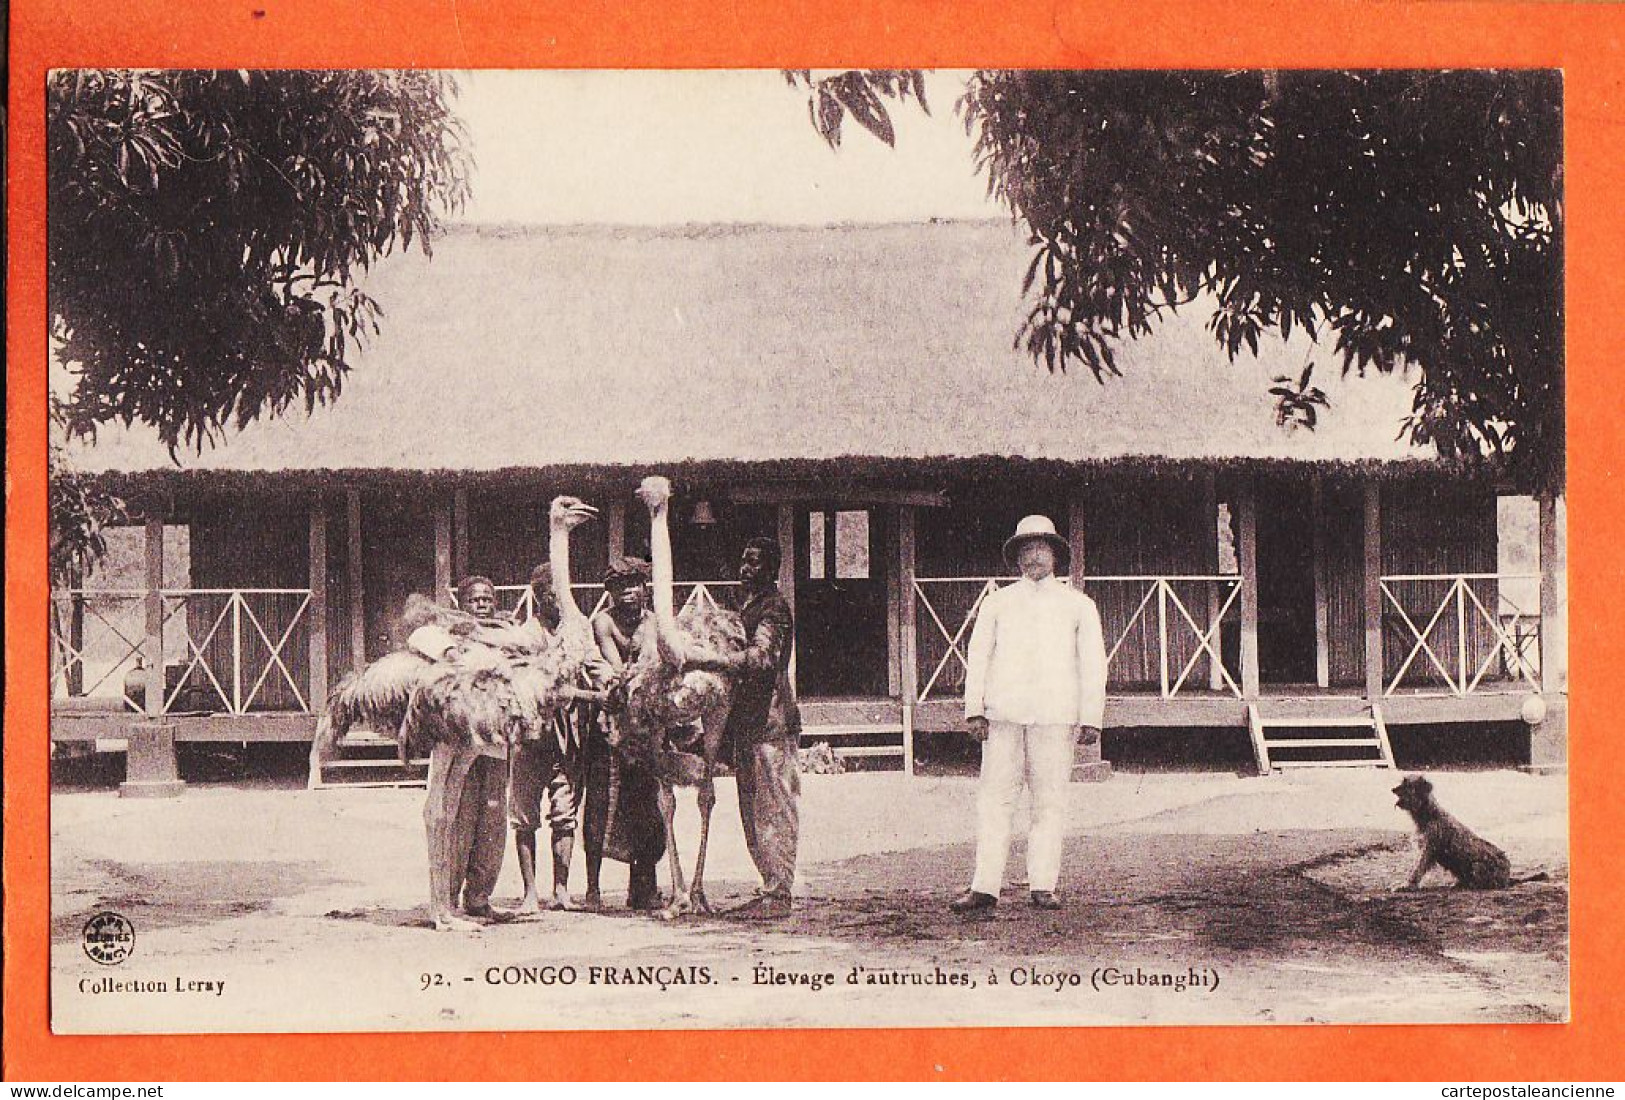 32630 / ⭐ (•◡•) OKOYO Oubanghi Congo Français ◉ Elevage D' Autruches -Collection LERAY 92 Mission Mgr AUGOUARD - French Congo